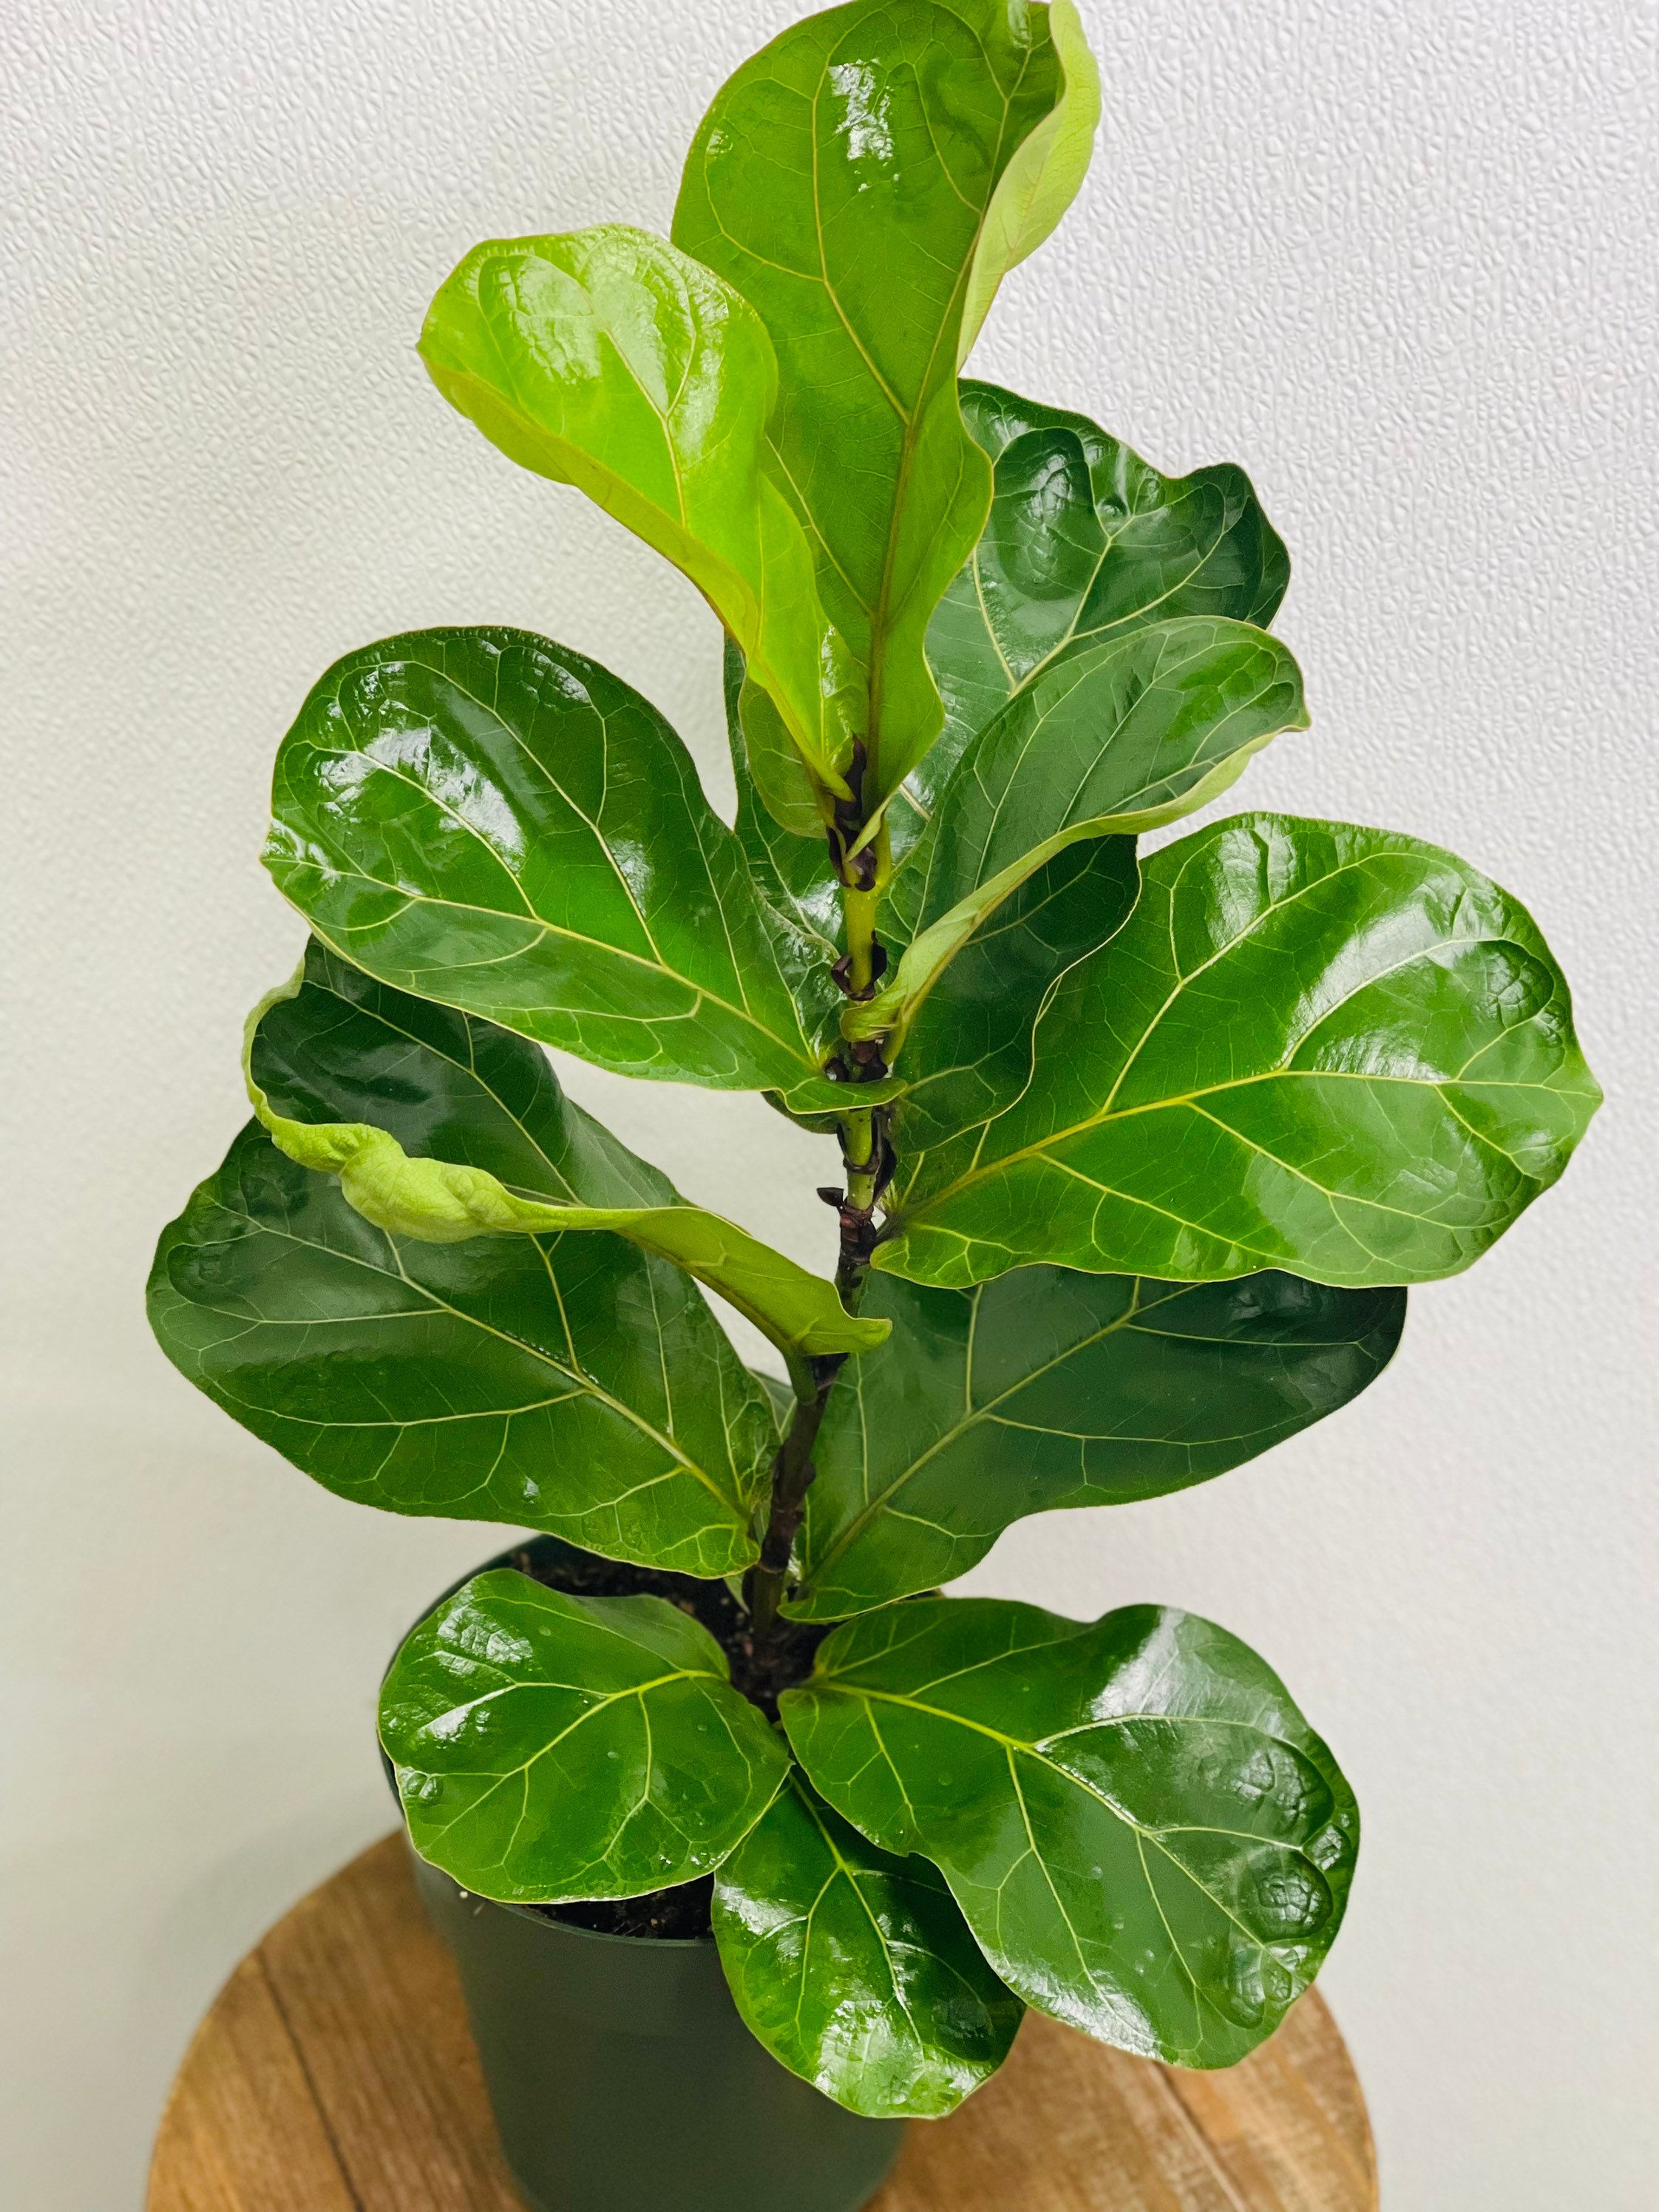 LIVE Ficus Lyrata indoor houseplant evergreen in 6" growers pot